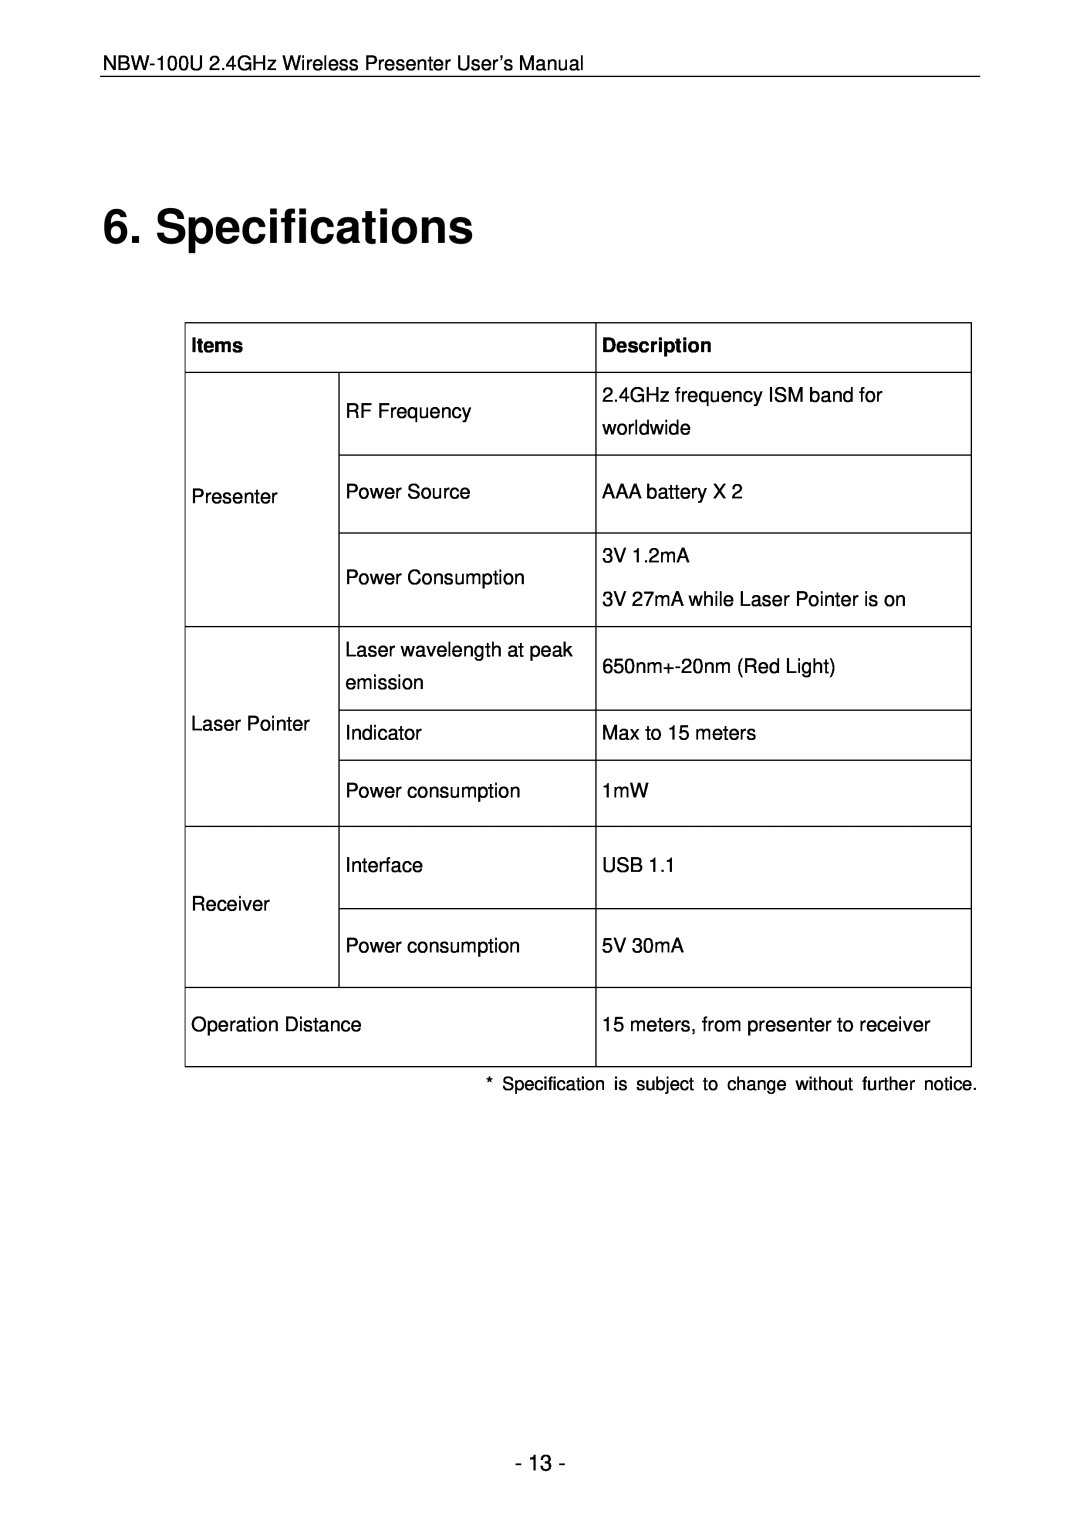 Vantec NBW-100U user manual Specifications, Items, Description 